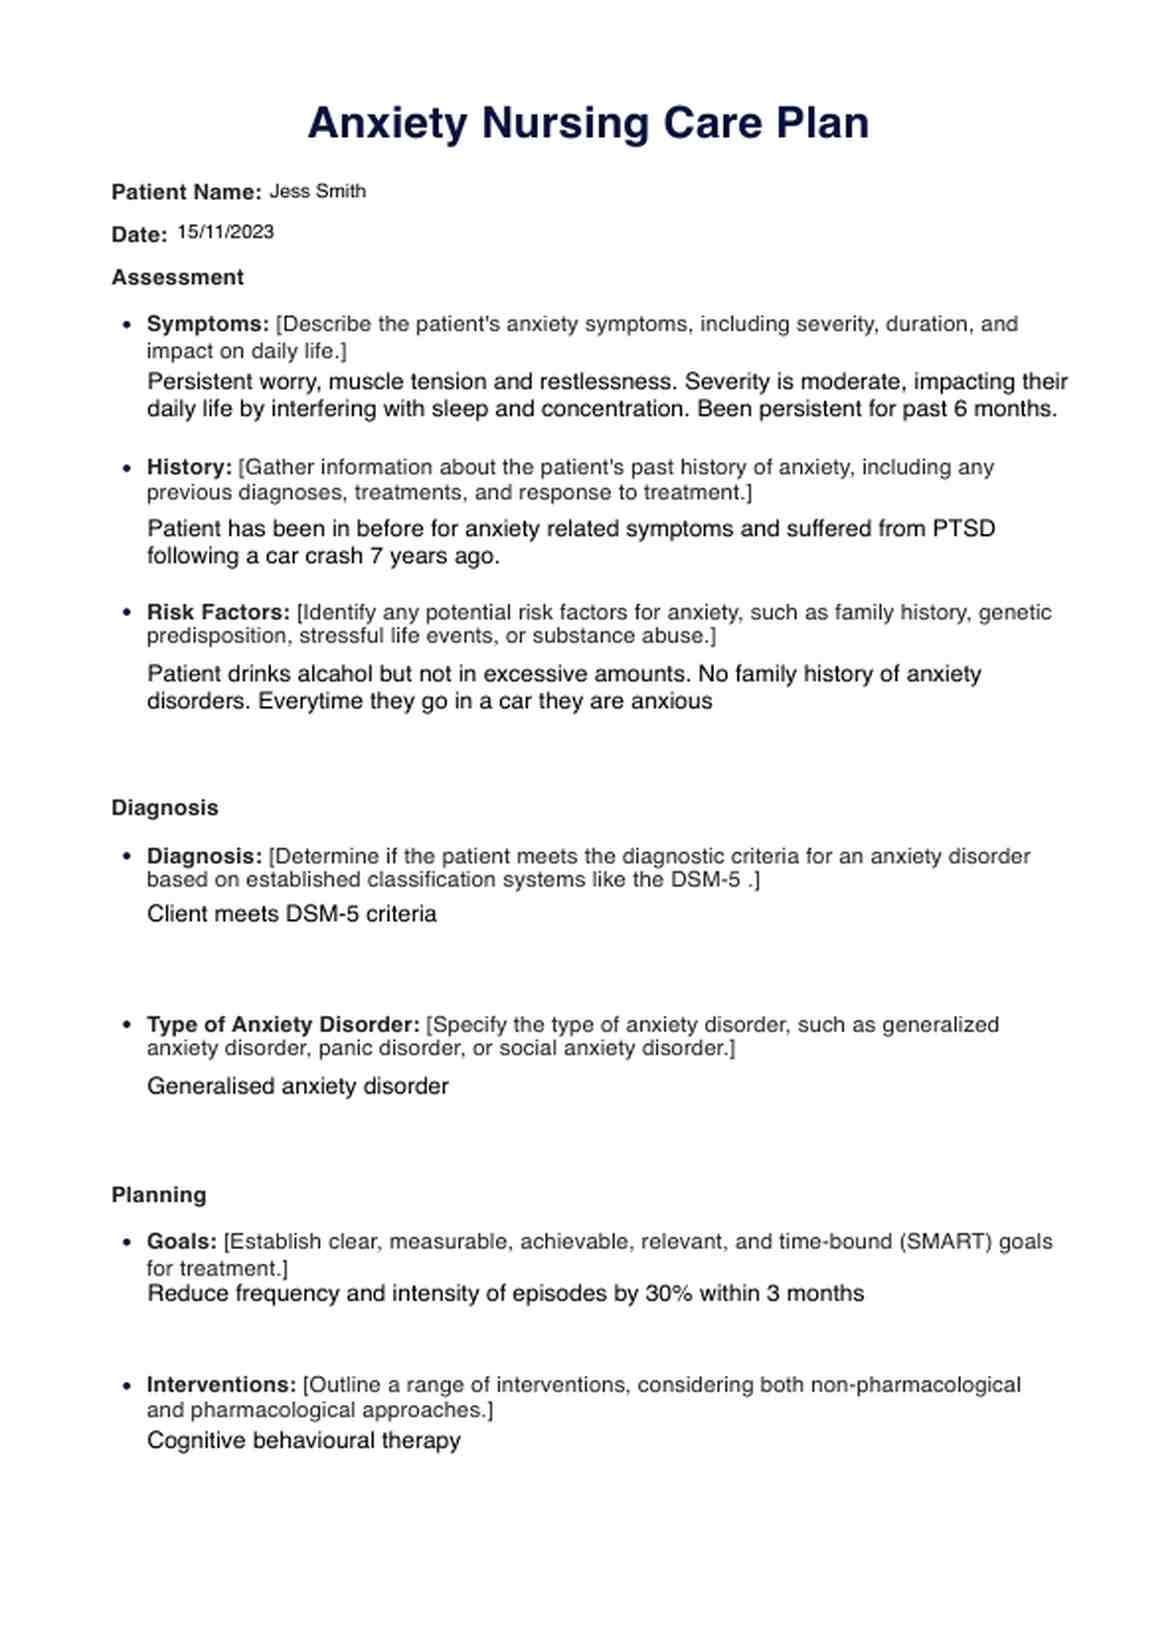 Anxiety Nursing Care Plan PDF Example